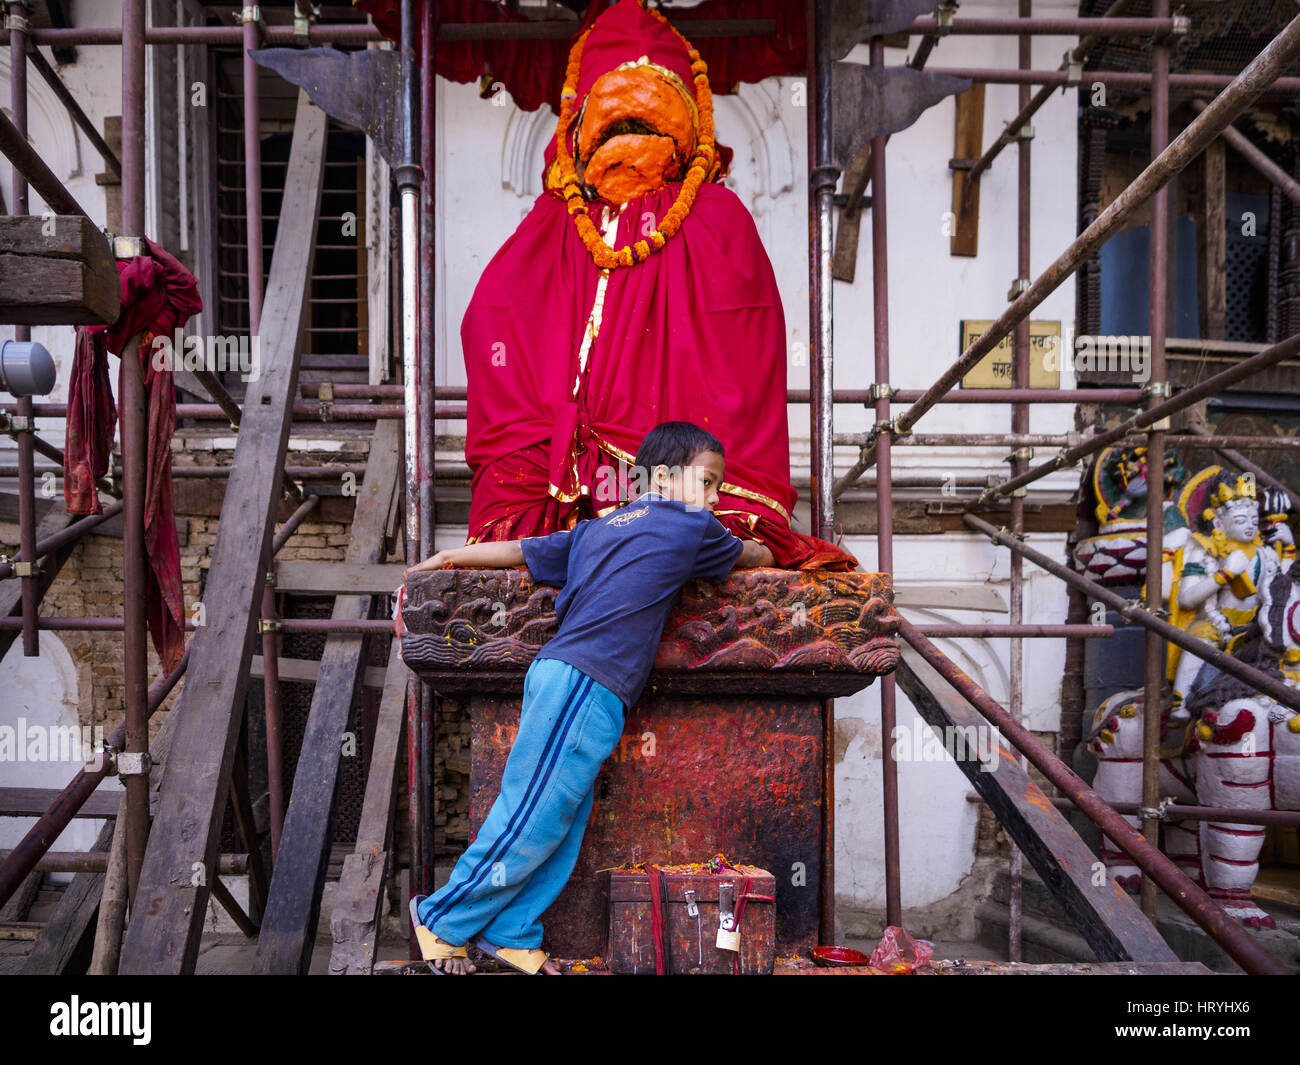 Kathmandu, Sviluppo Centrale Regione, Nepal. Mar 5, 2017. Un bambino gioca su una statua di Hunaman, il dio indù è raffigurato come una scimmia, la statua è circondata da un ponteggio che è in attesa per la parete del Hanuman Dhoka Palazzo su Piazza Durbar di Kathmandu, un sito Patrimonio Mondiale dell'UNESCO gravemente danneggiata nel terremoto del 2015. Molto di Kathmandu è ora un sito in costruzione a causa della ricostruzione di due anni dopo il terremoto del 25 aprile 2015 che hanno devastato il Nepal. In alcuni villaggi della valle di Kathmandu i lavoratori stanno lavorando a mano per rimuovere il rublo e scavare edifici distrutti. Circa 9.000 pe Foto Stock